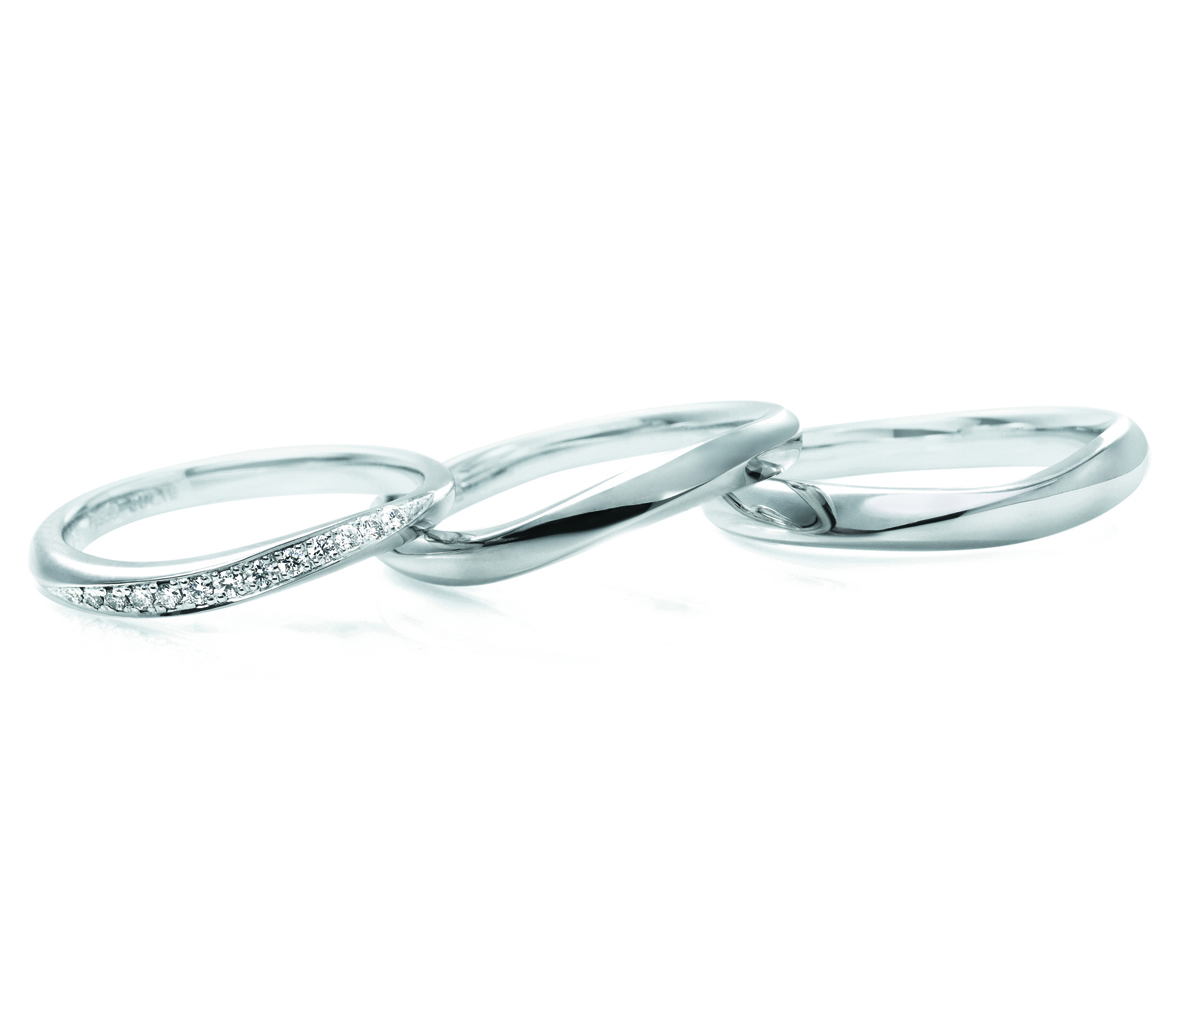 ウェーブ（S字カーブ）の結婚指輪｜お気に入りリングを見つける３つの 